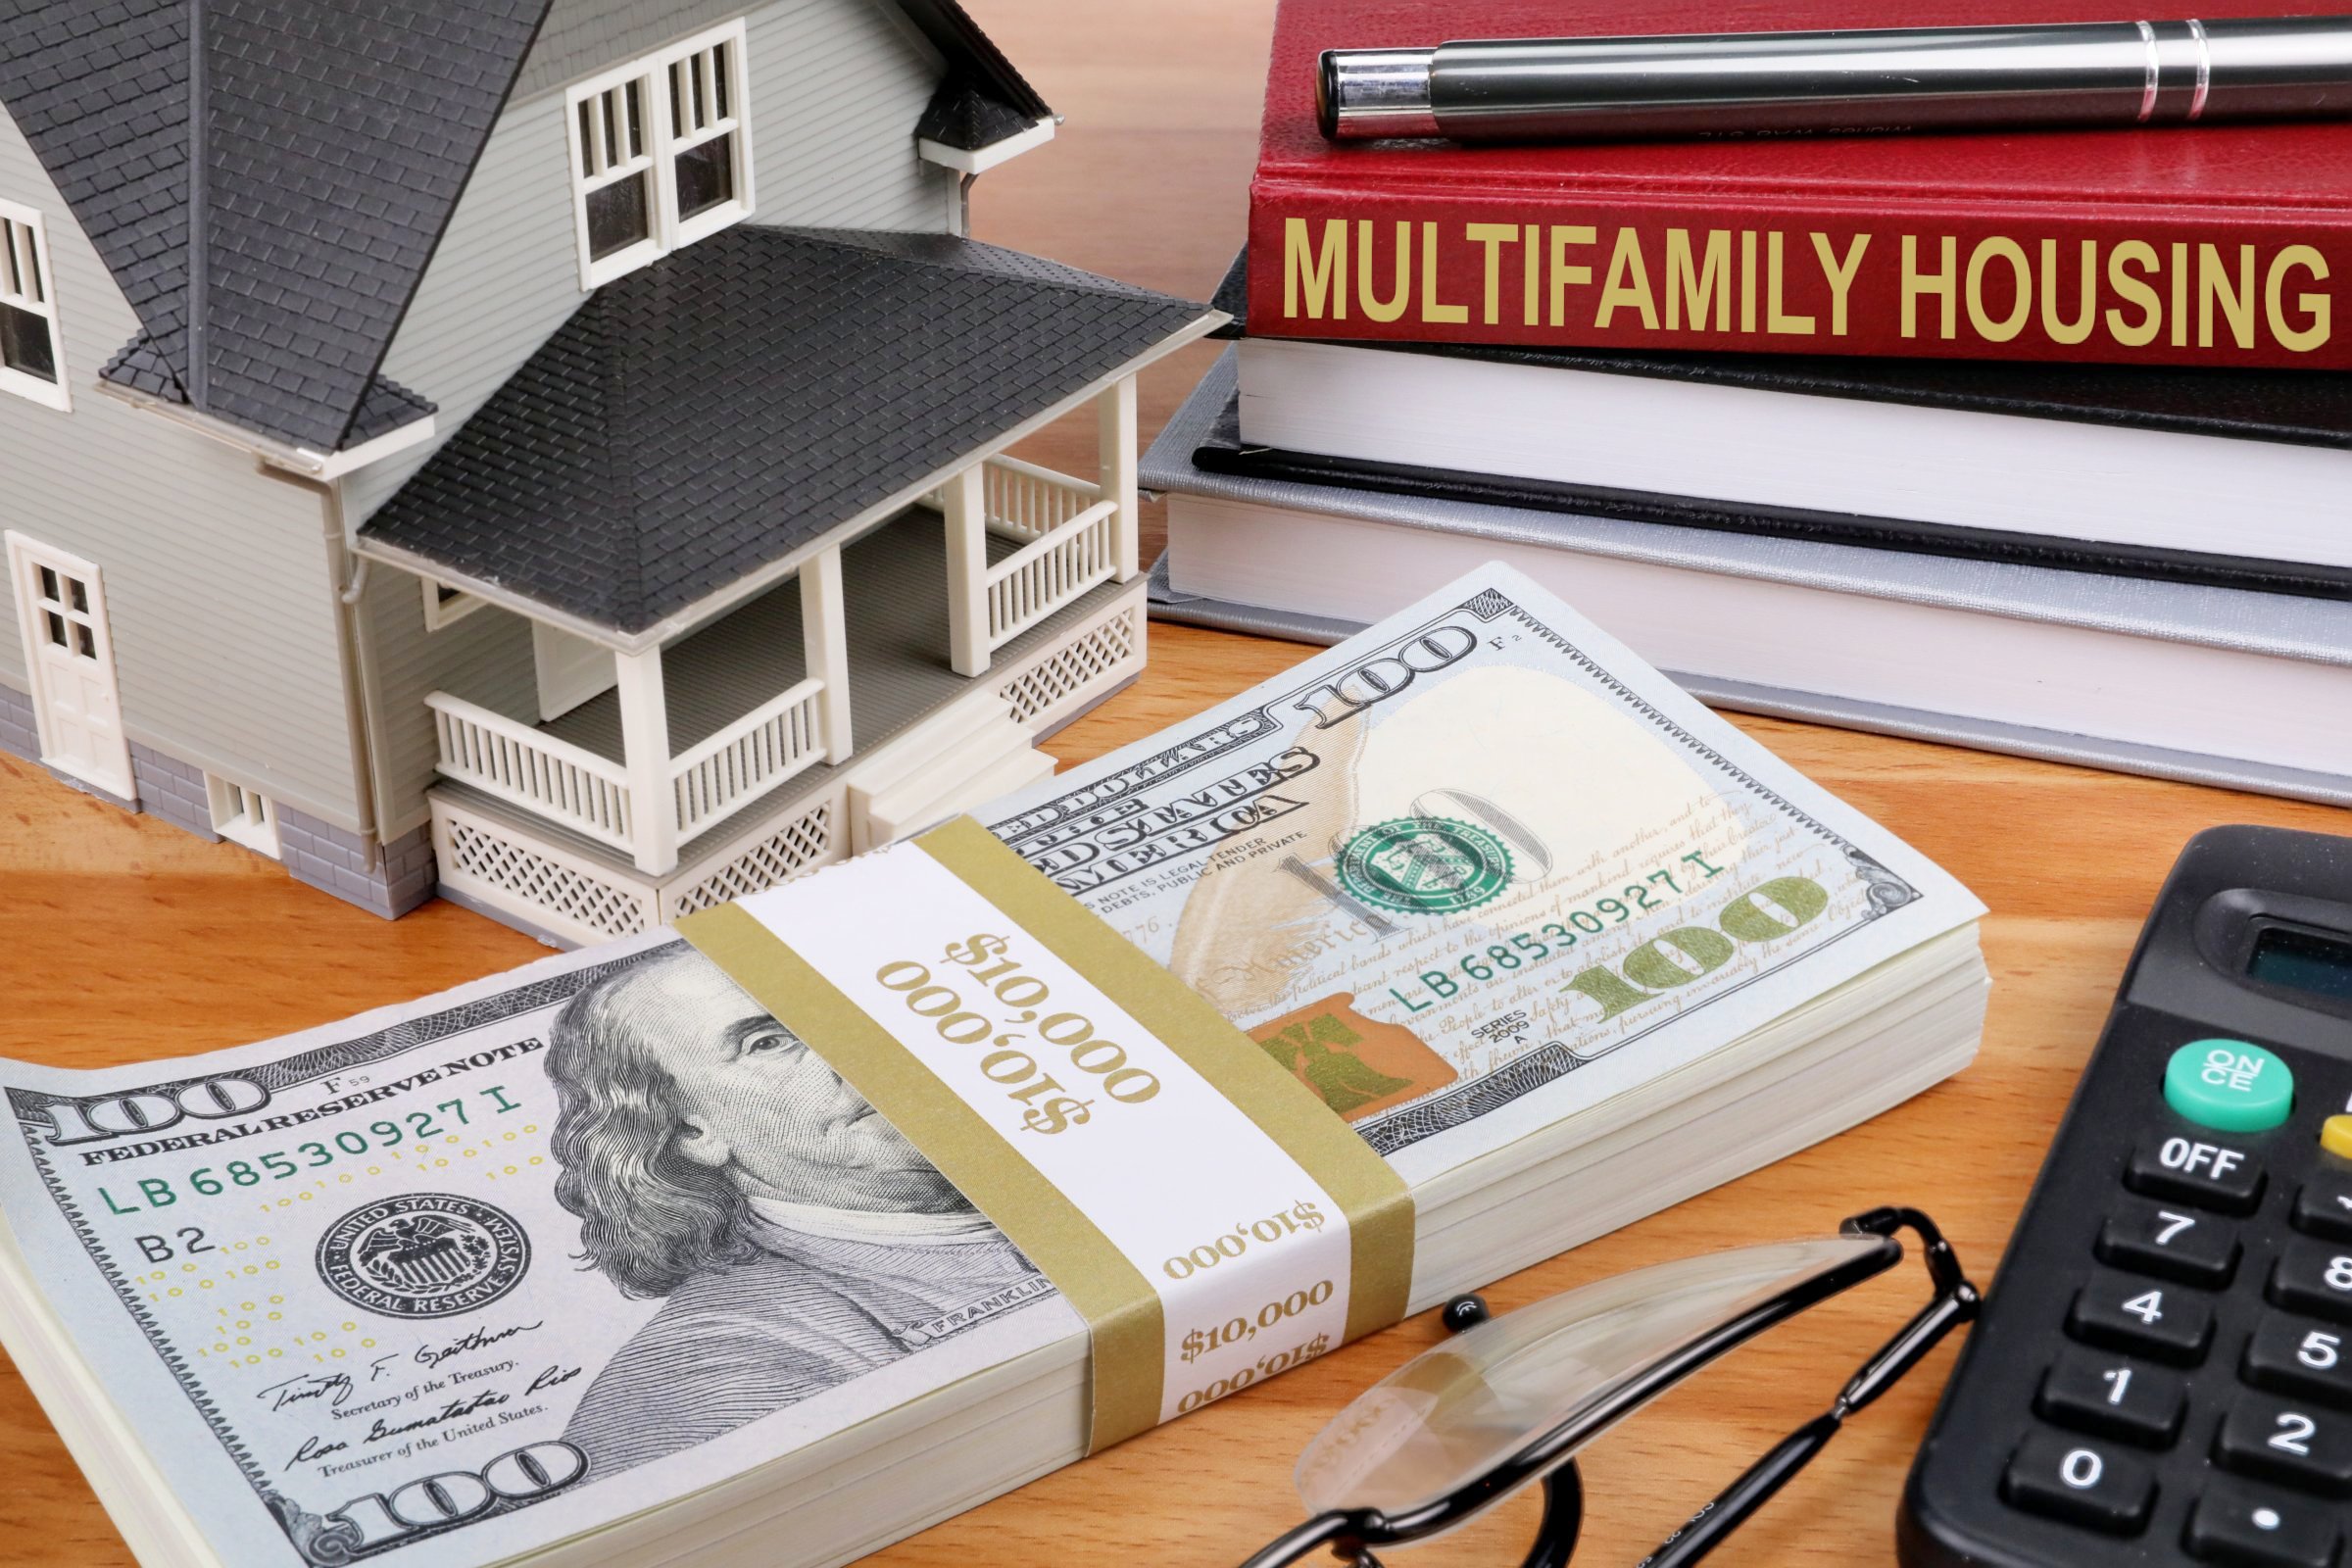 multifamily housing